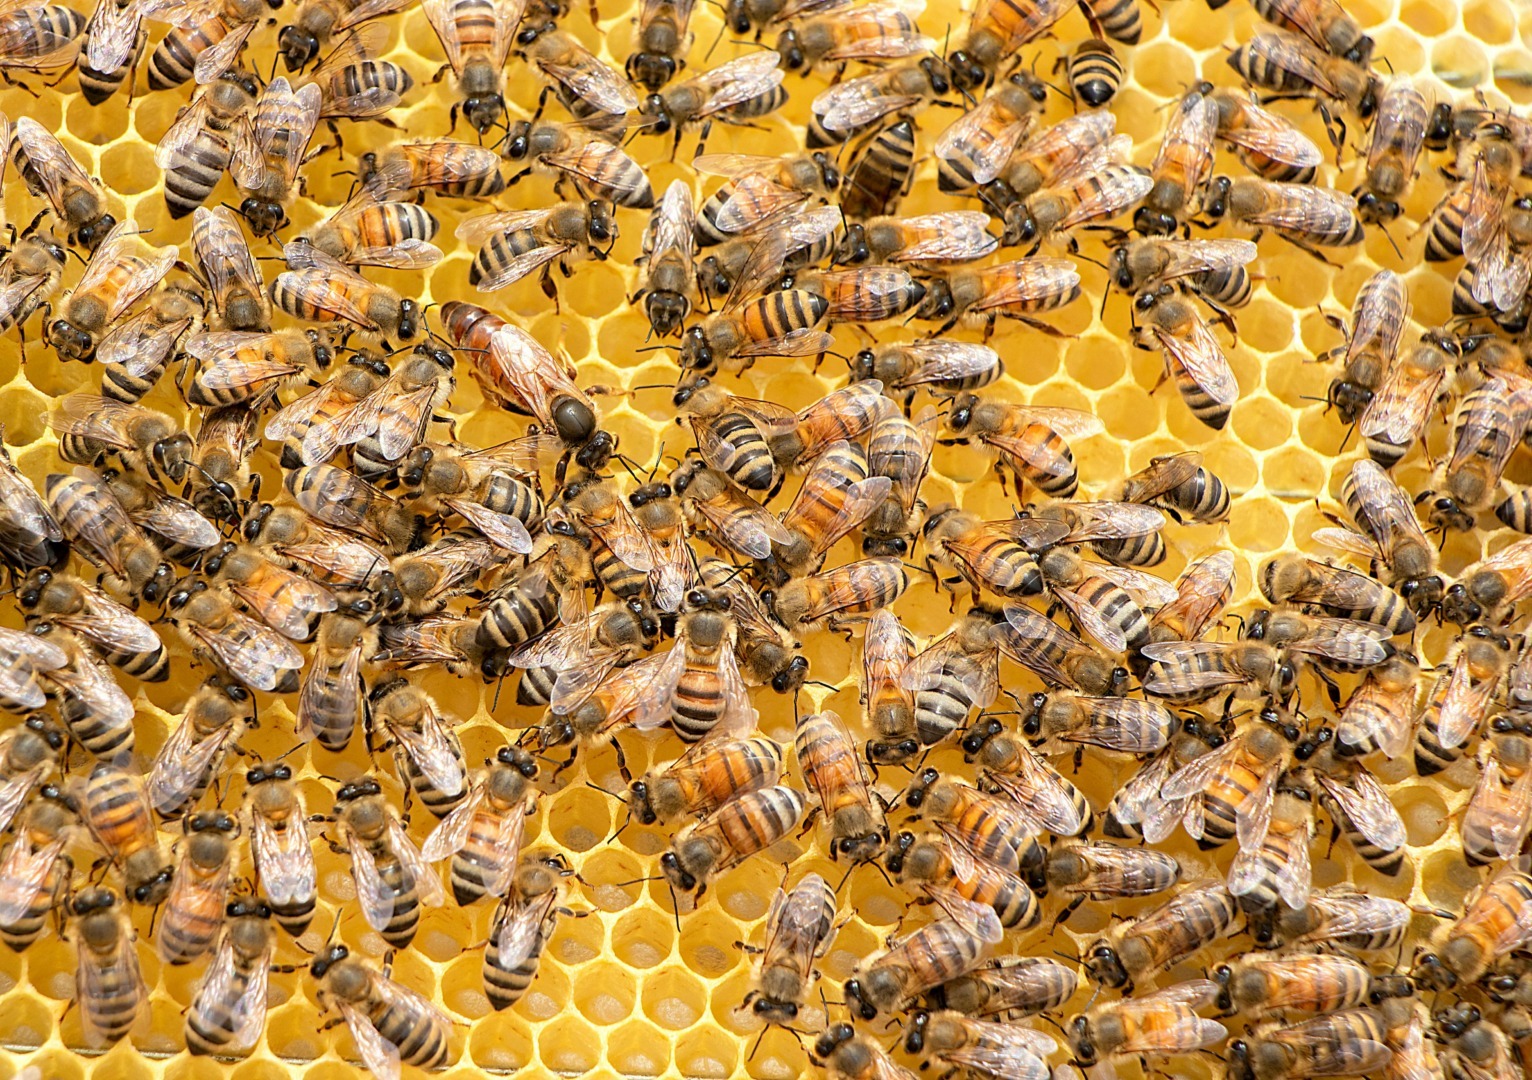 ceara de albine trateaza pielea si durerile si inflamatiile